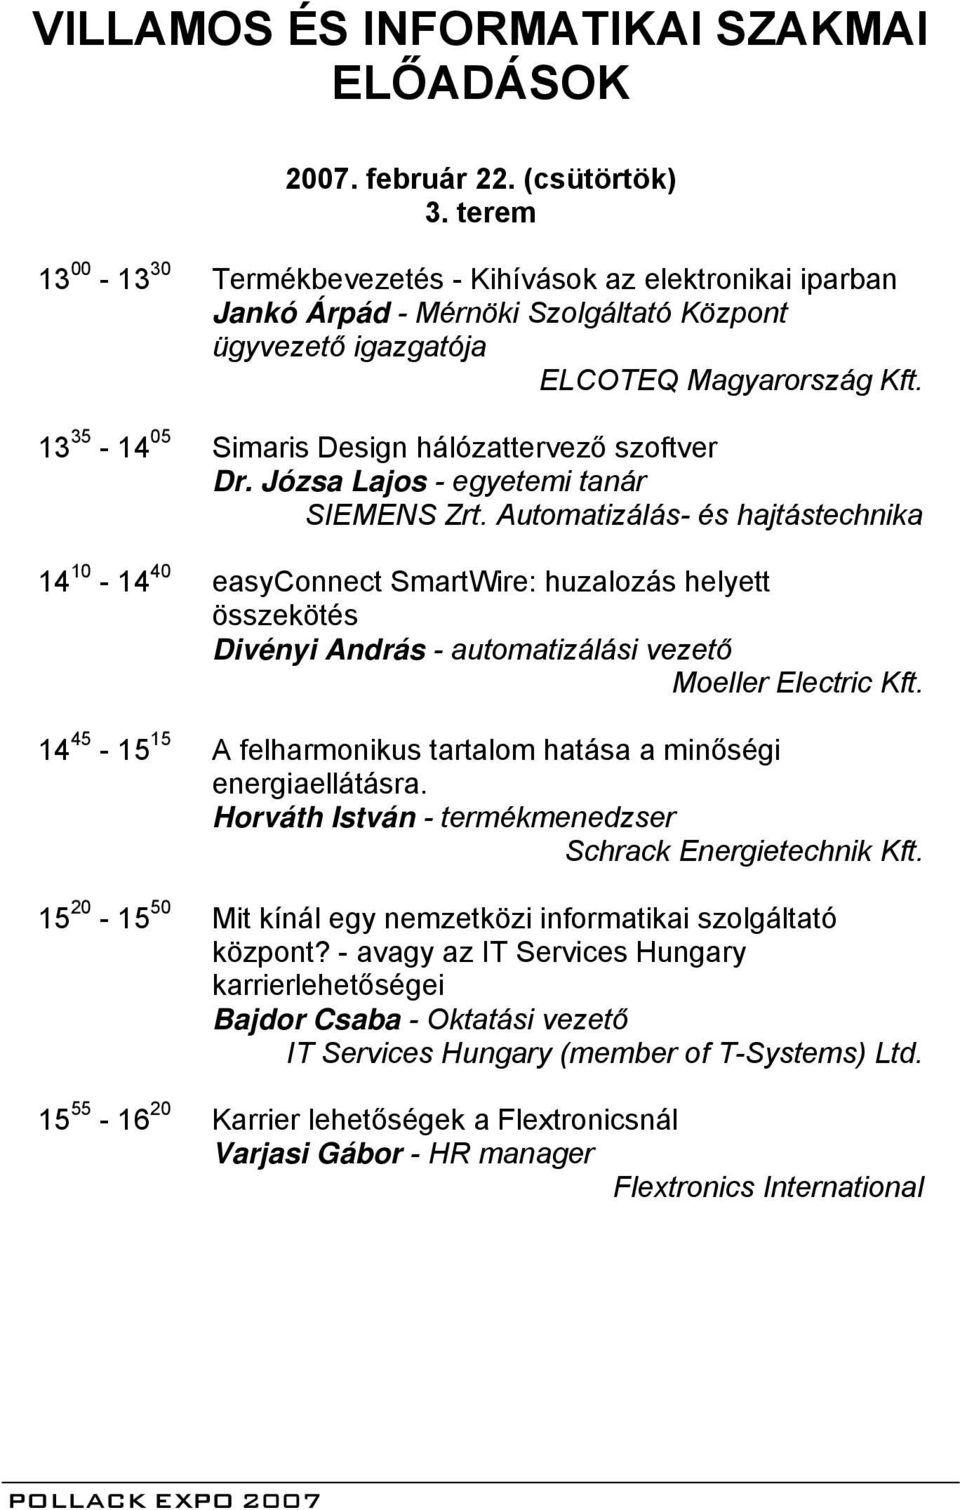 13 35-14 05 Simaris Design hálózattervező szoftver Dr. Józsa Lajos - egyetemi tanár SIEMENS Zrt.